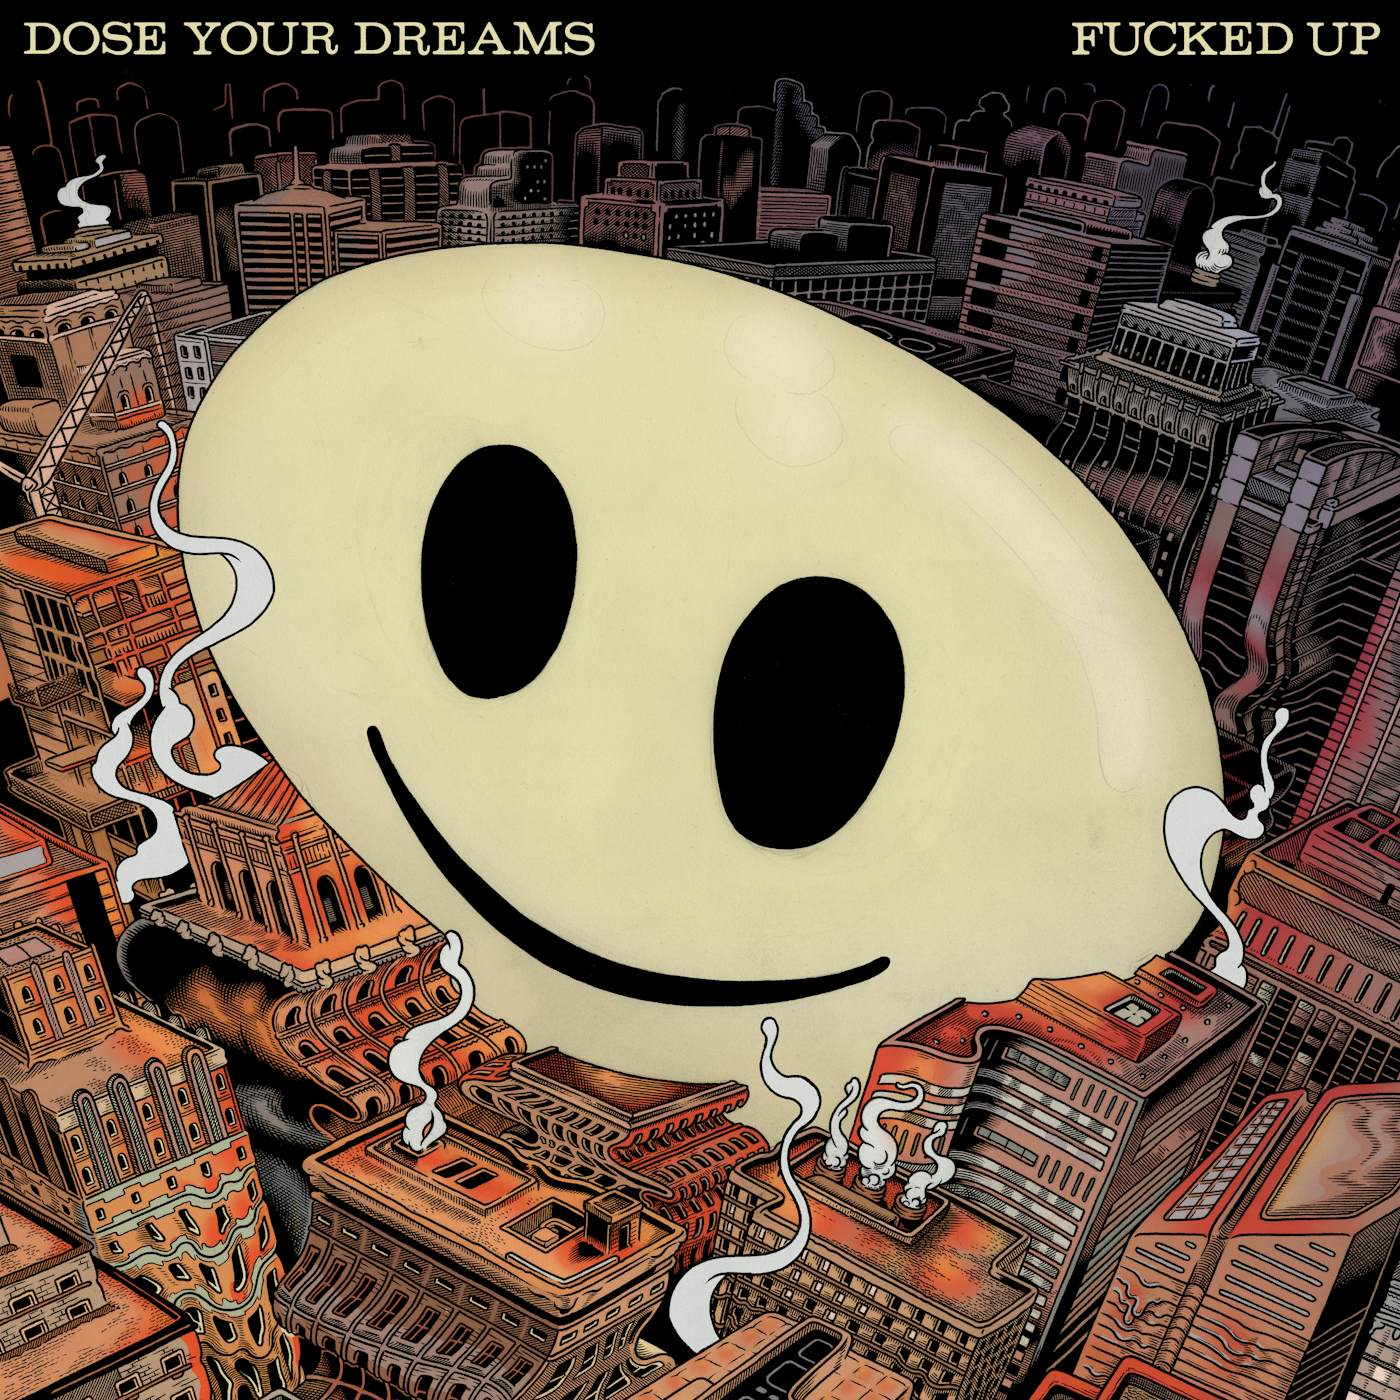 Fucked Up Dose Your Dreams Vinyl Record